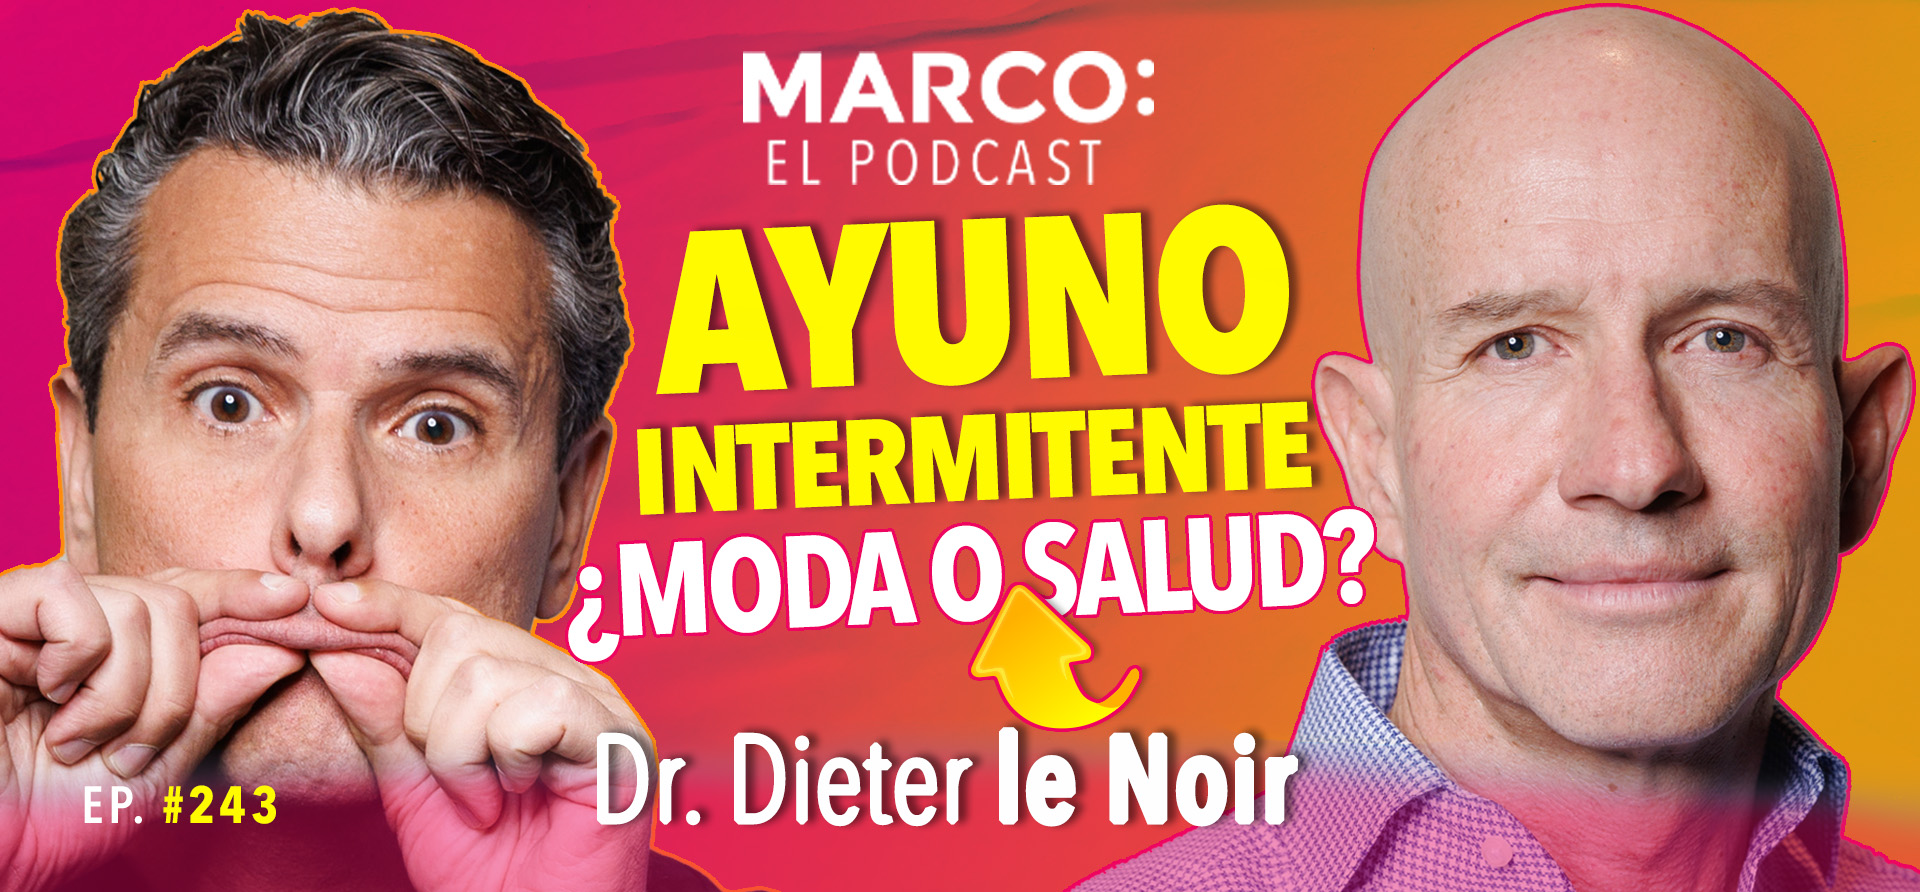 Ayuno intermitente Marco El Podcast